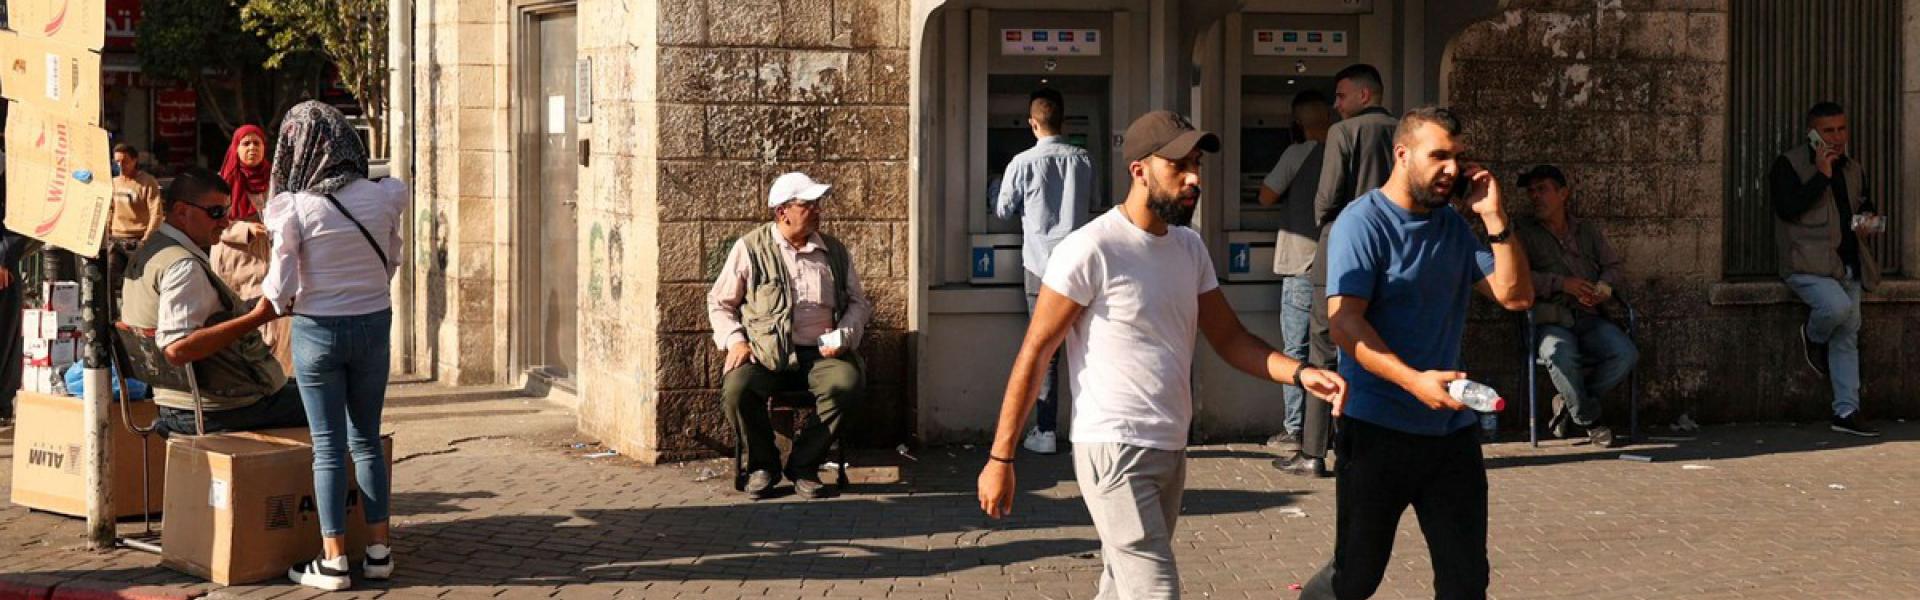 تراجع المنح الخارجية للميزانية العامة الفلسطينية إلى أقل من 220 مليون دولار